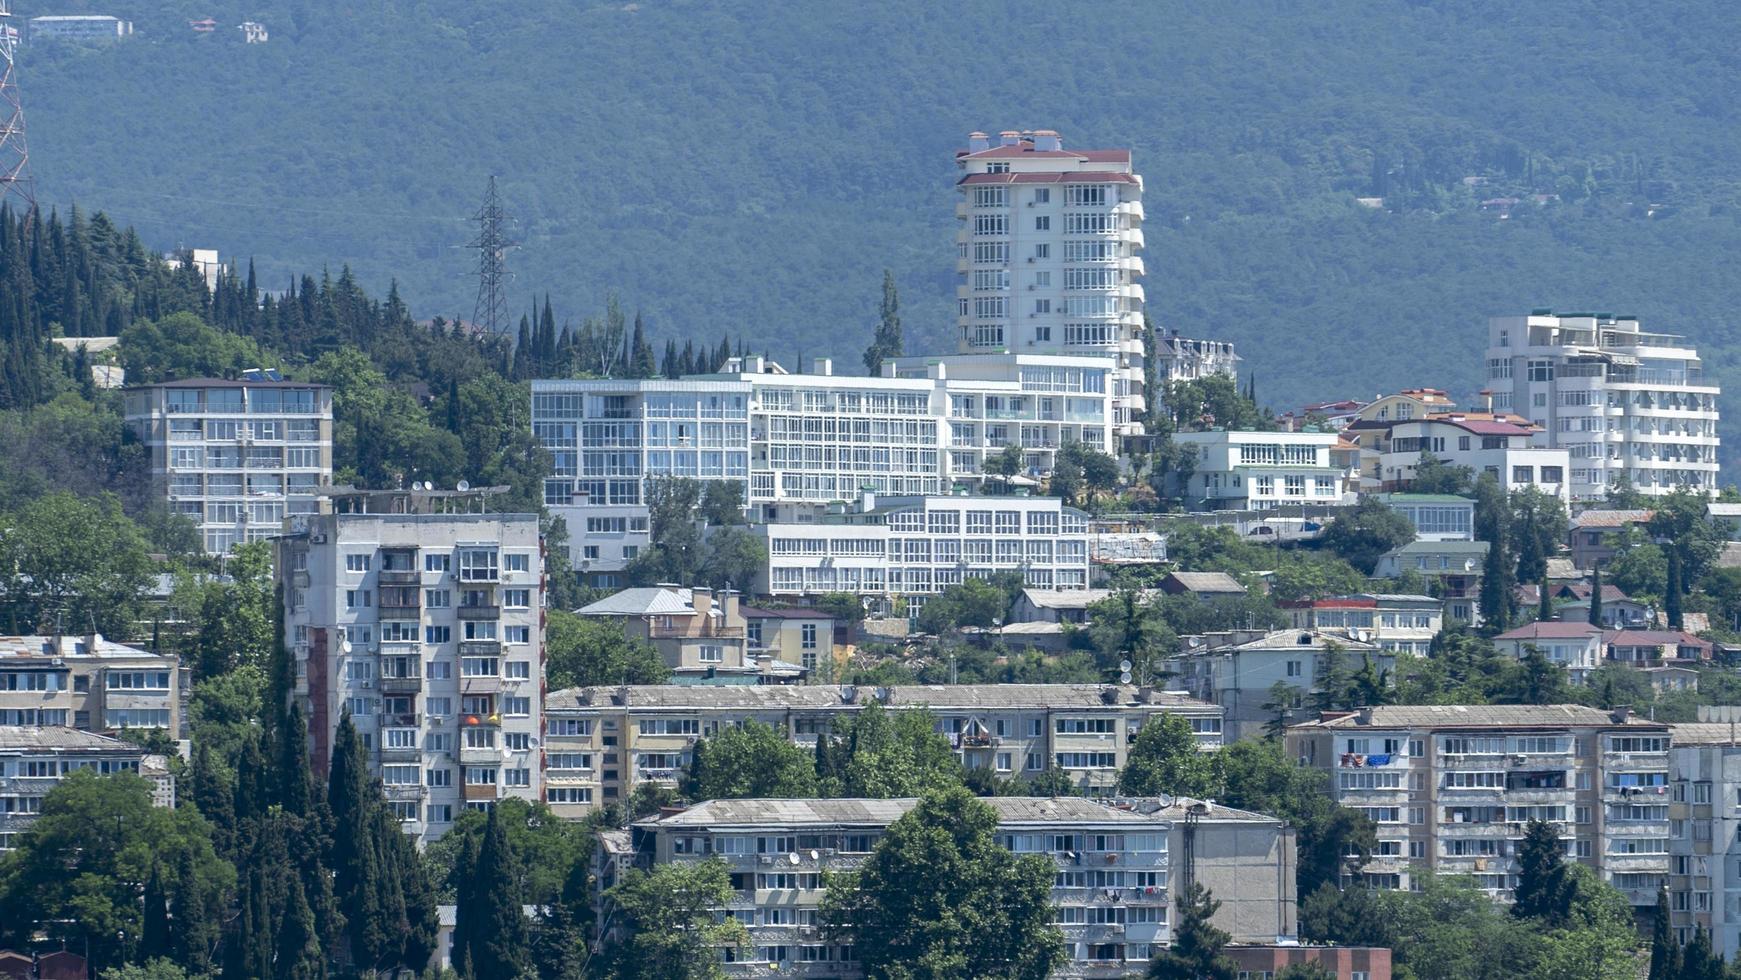 paysage urbain avec bâtiments et architecture. yalta photo